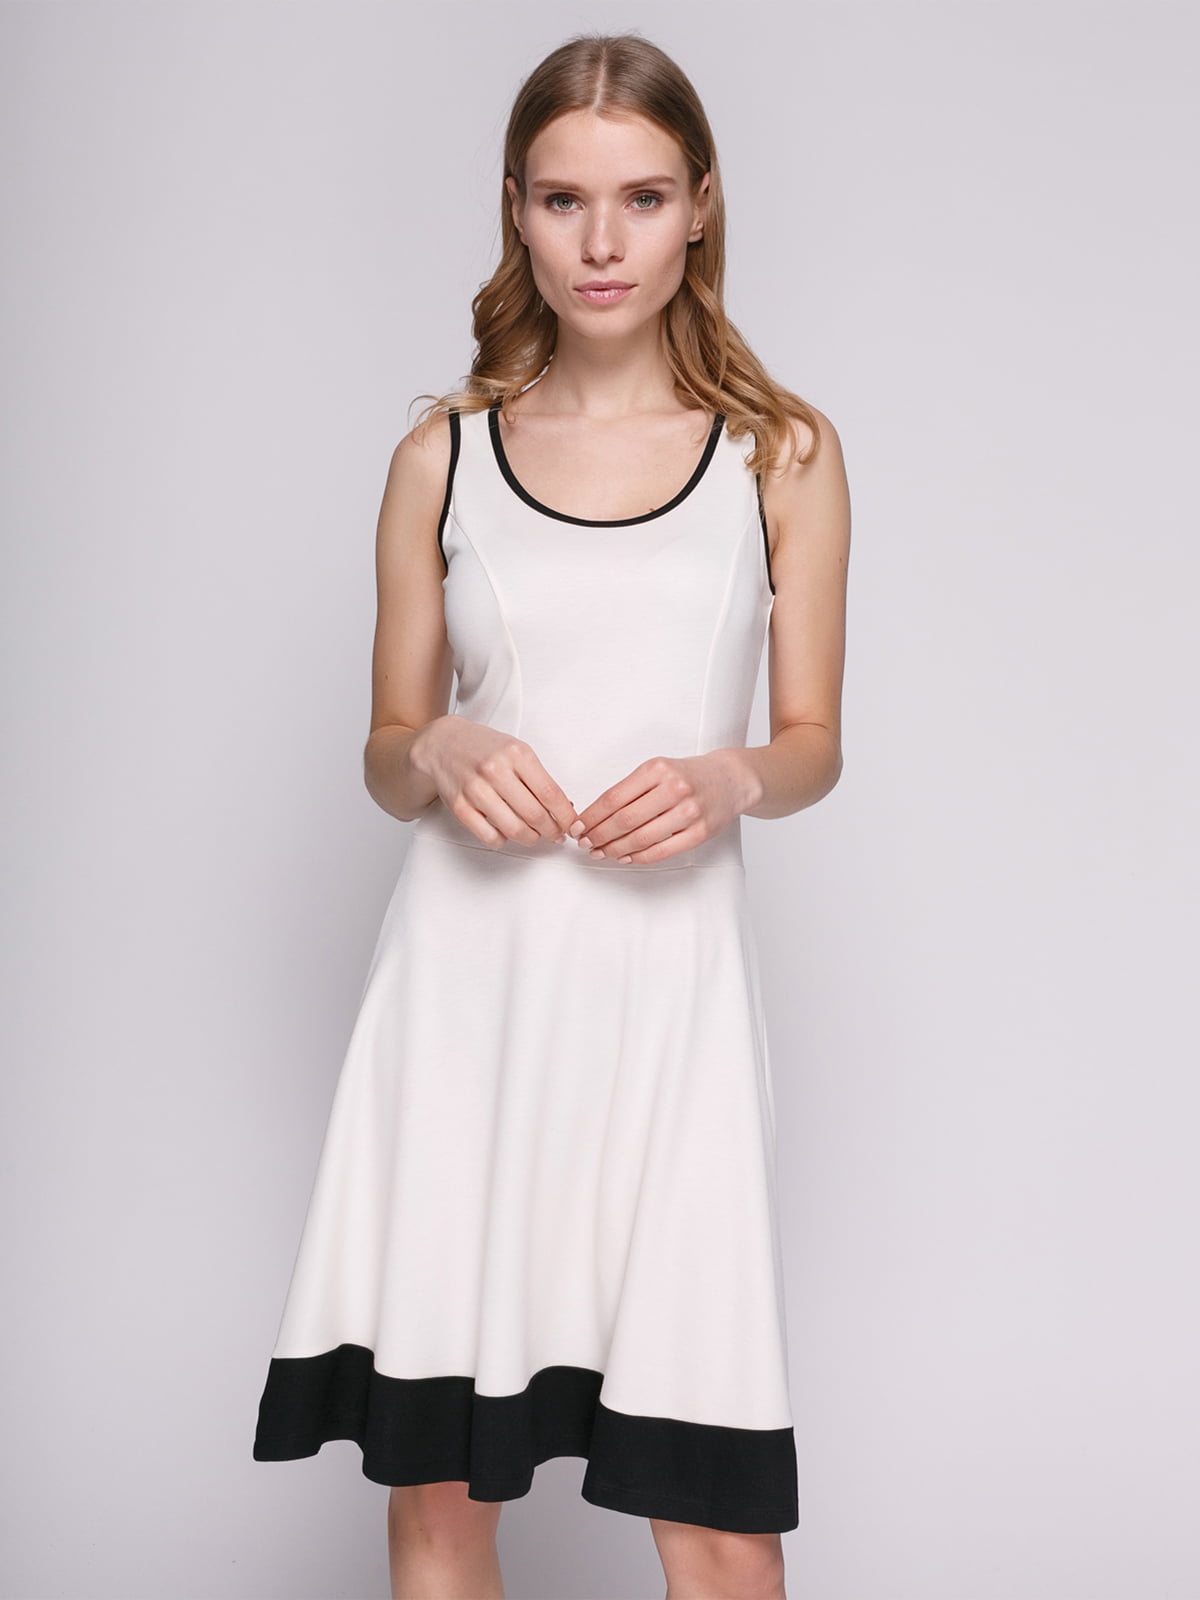 Сукня біла з оздобленням чорного кольору | 692169